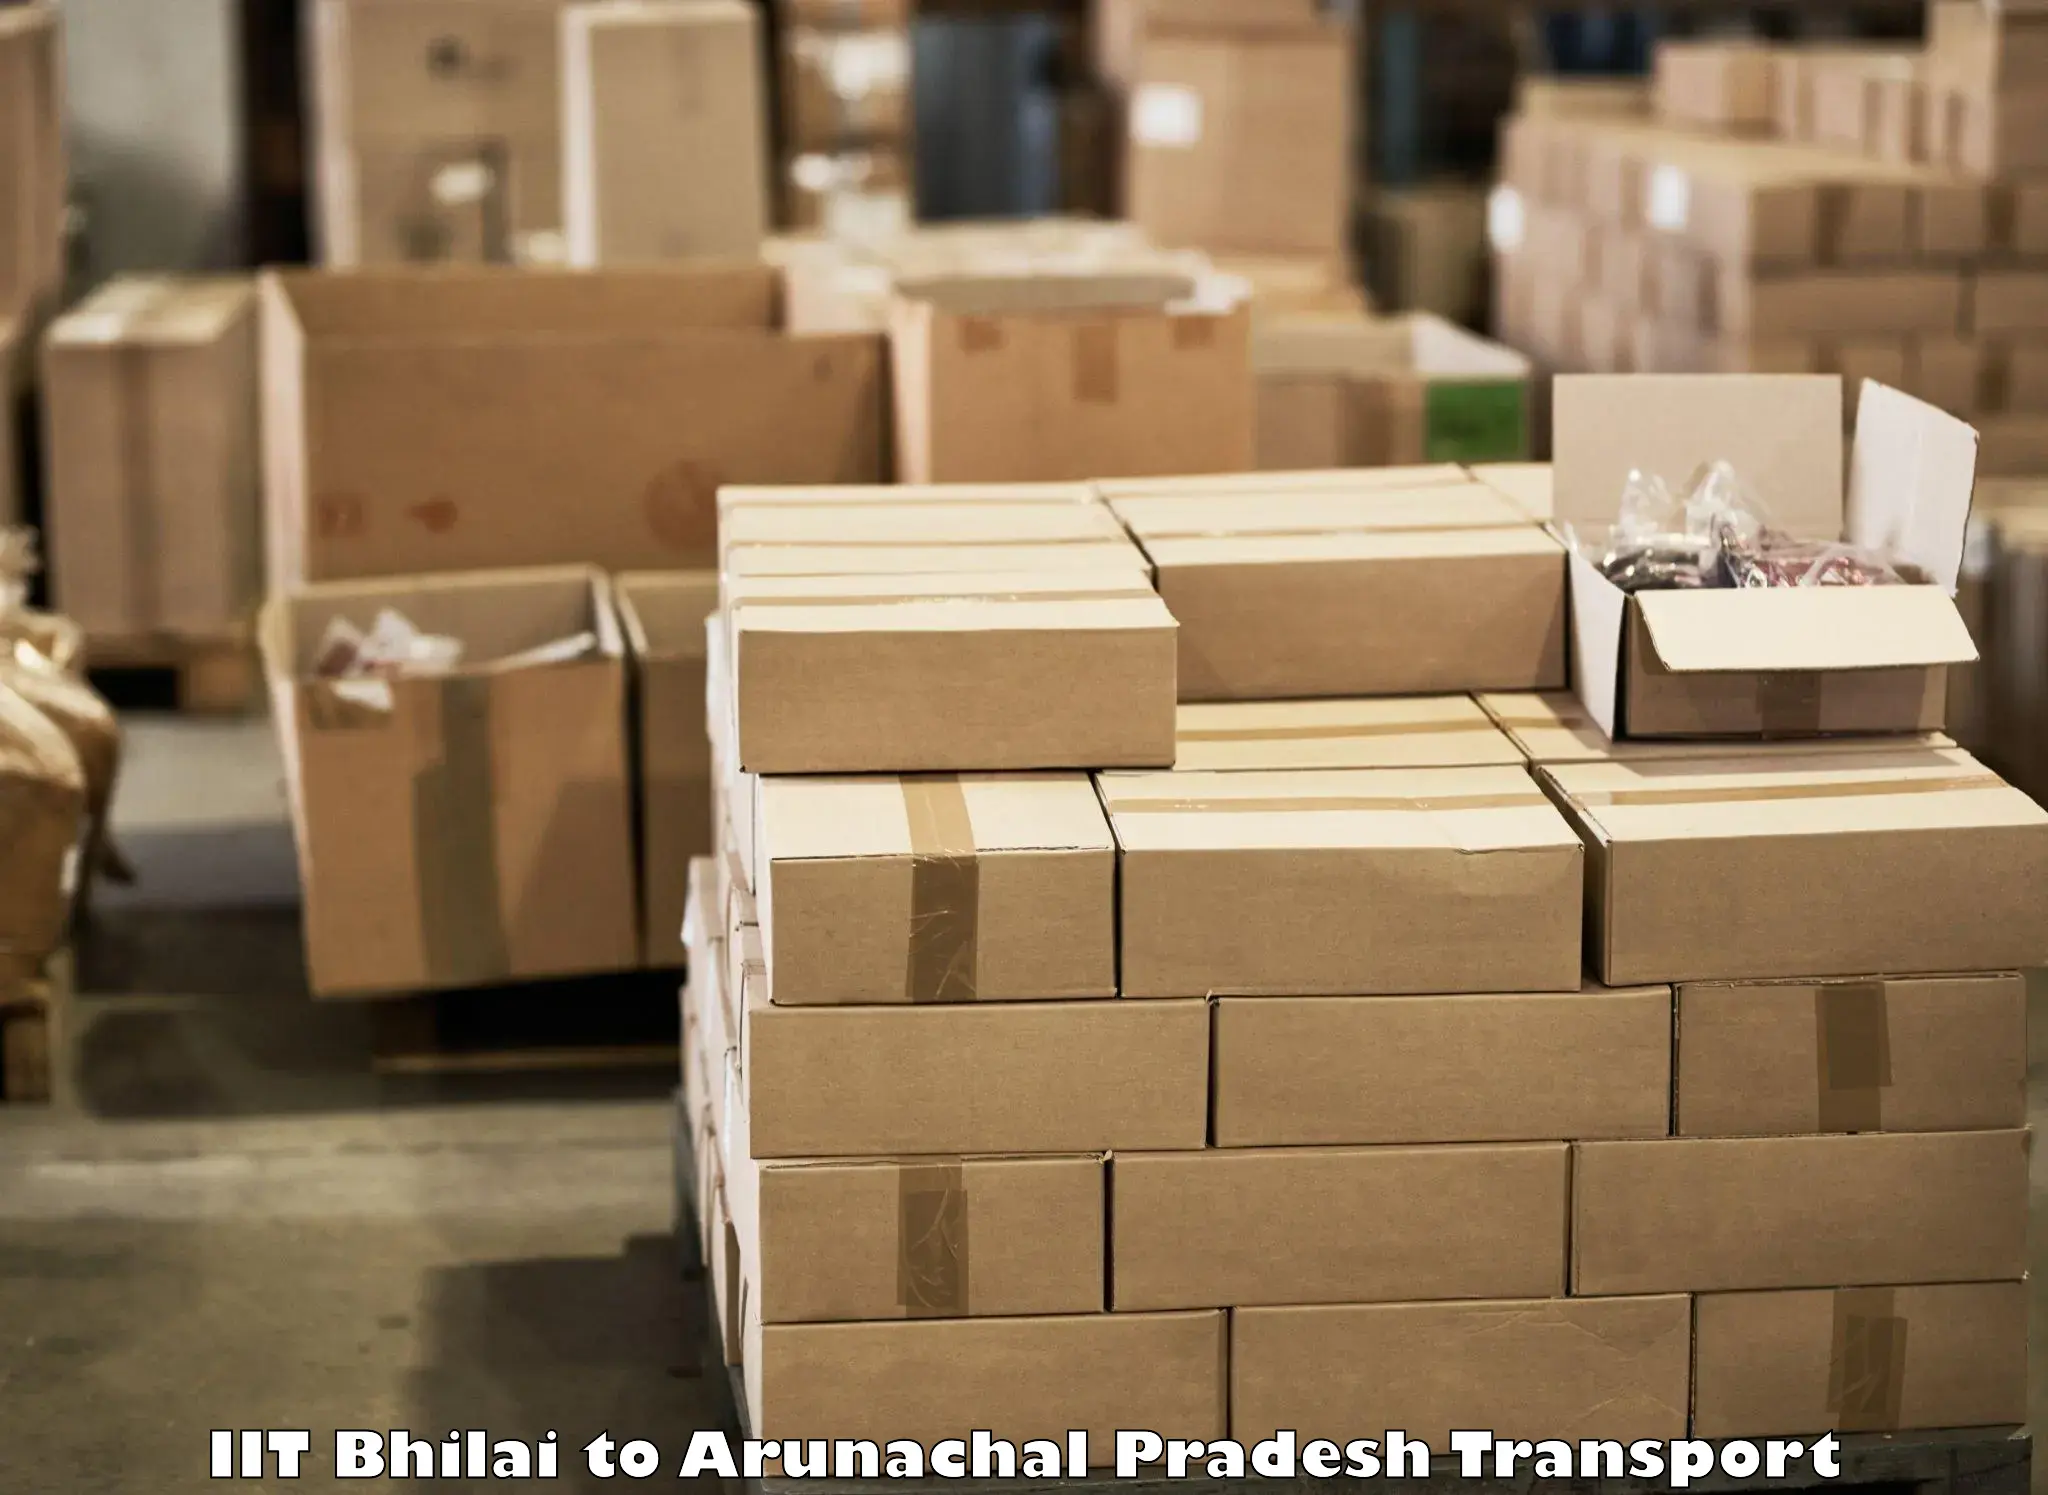 Container transportation services IIT Bhilai to Jairampur